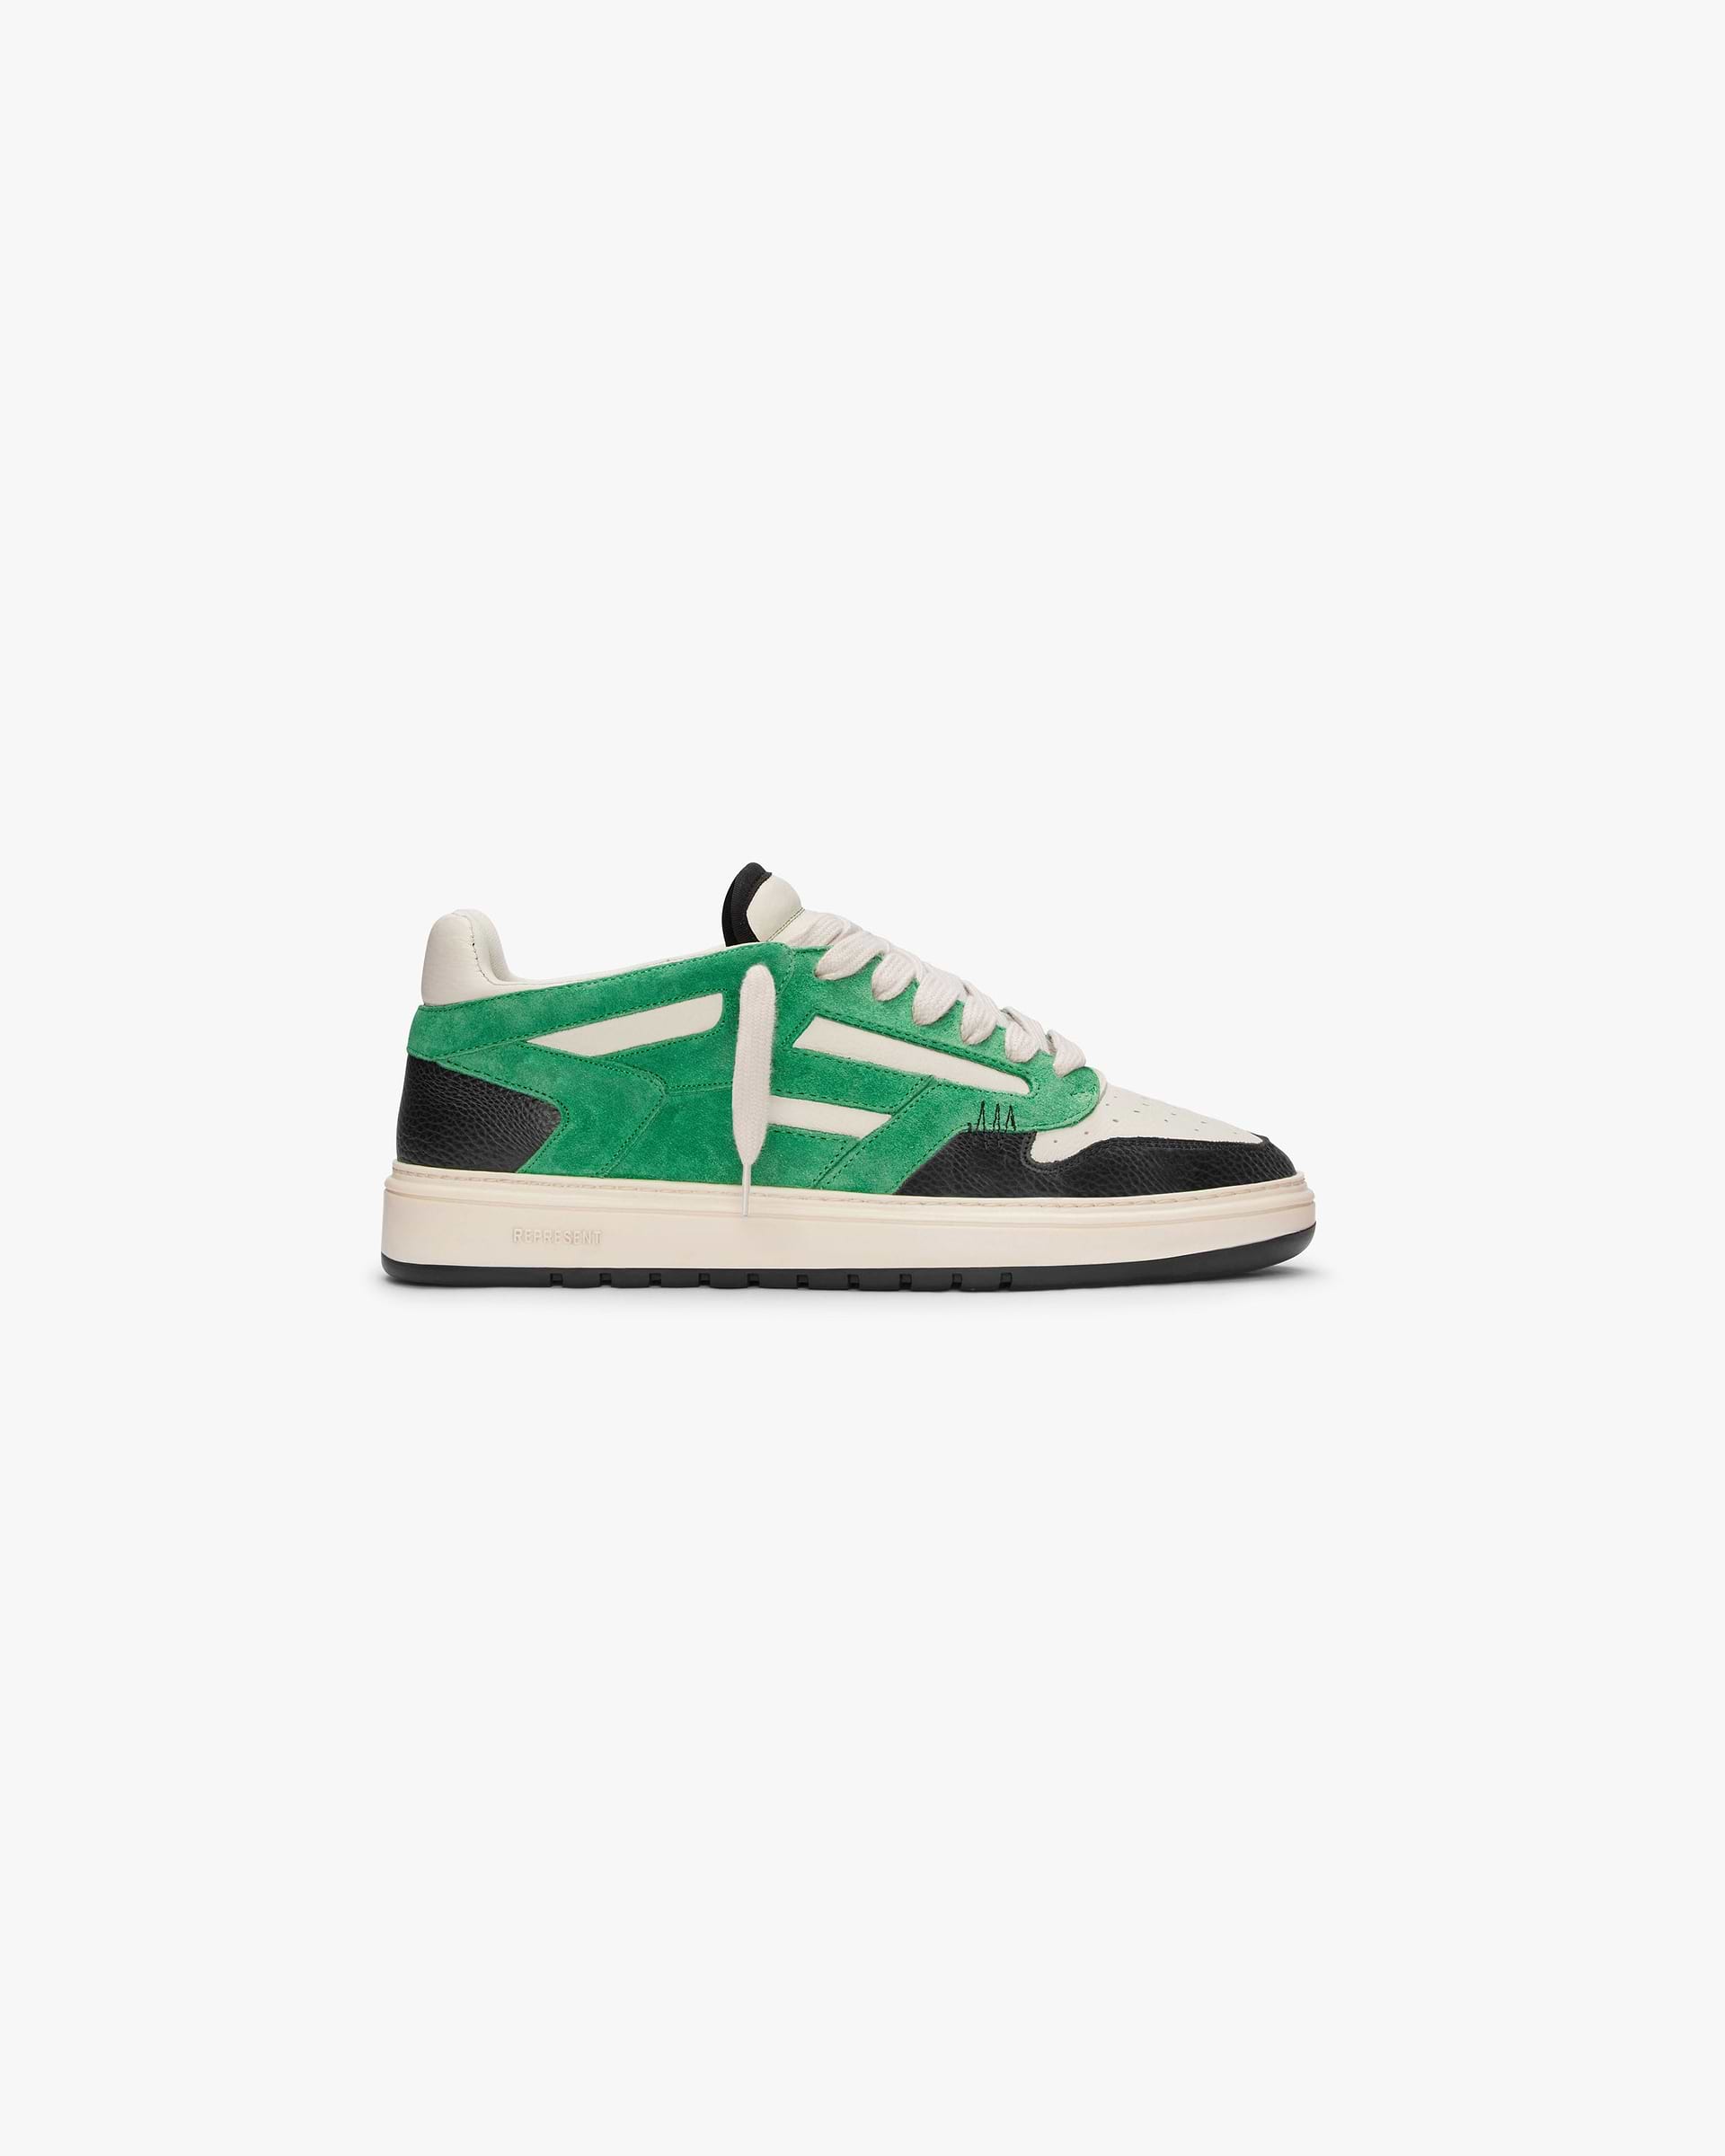 Green Reptor Low Sneakers | REPRESENT CLO